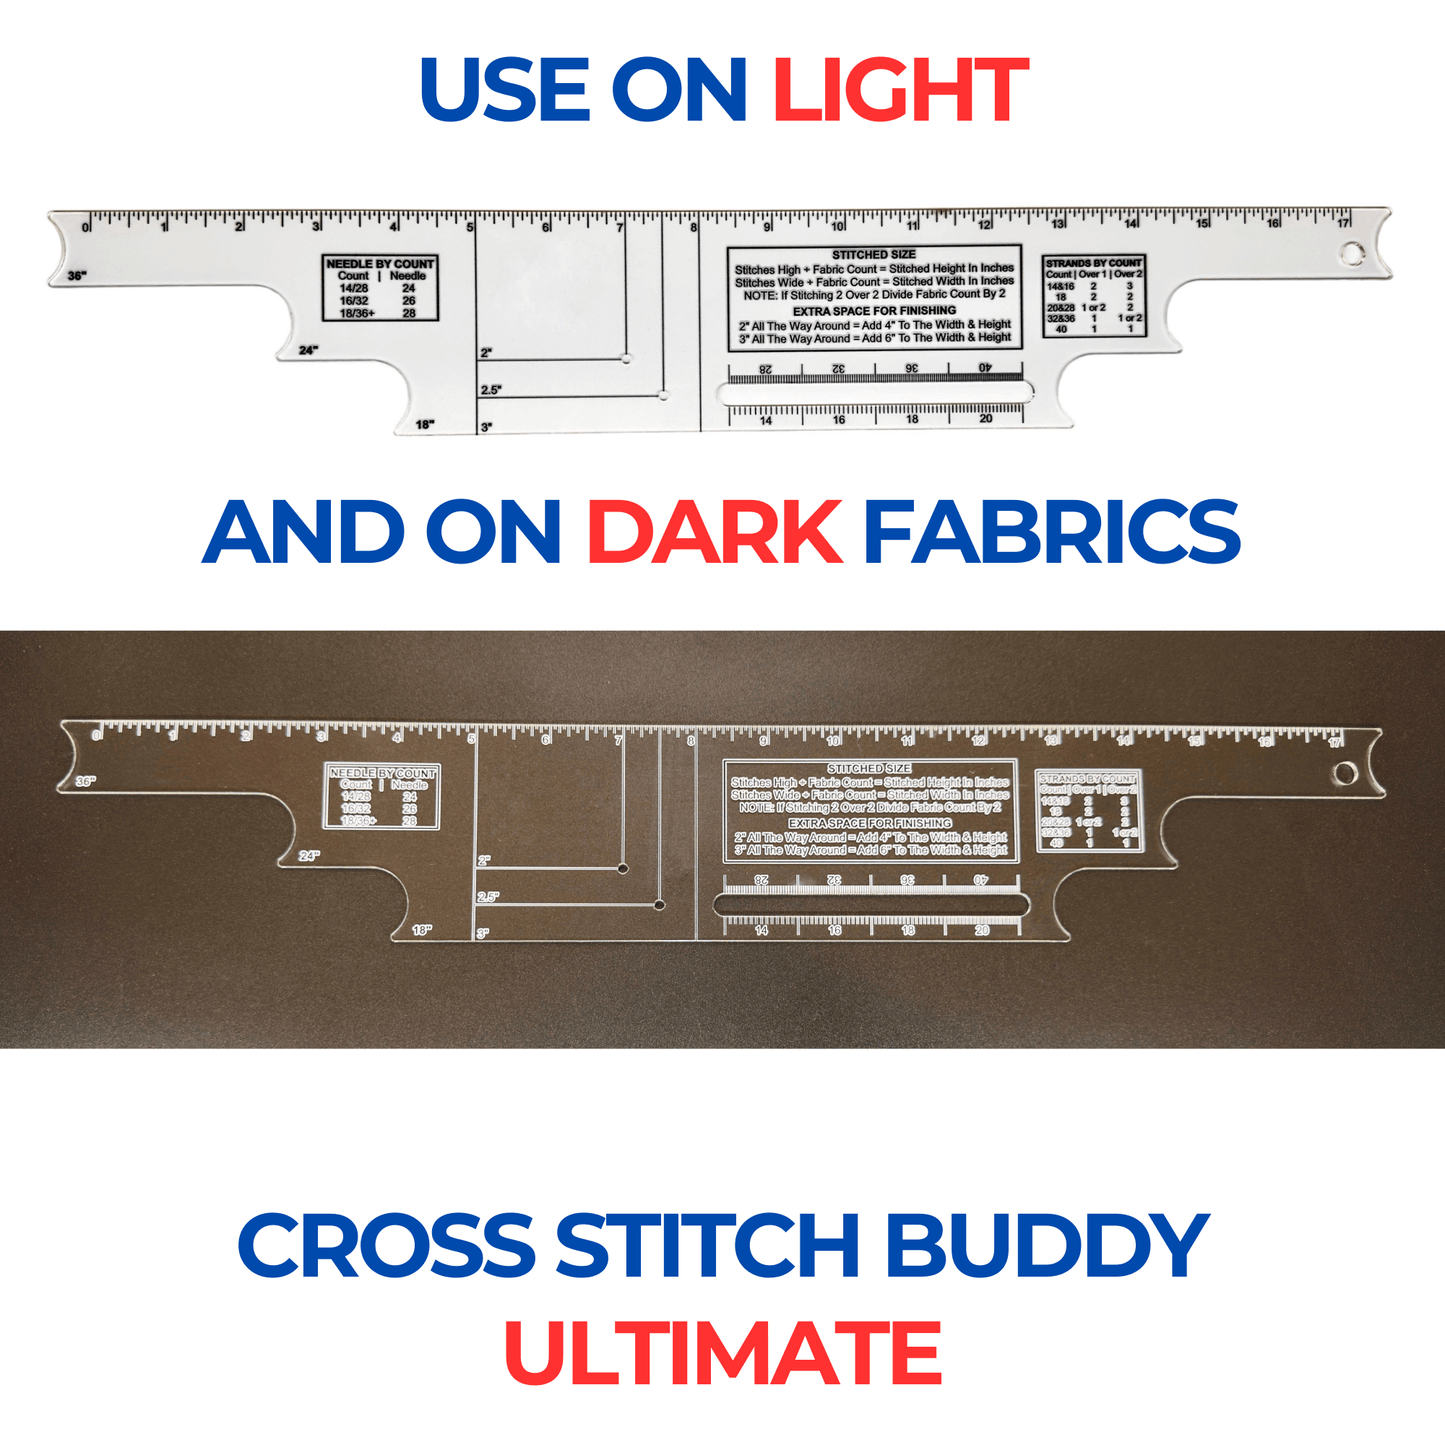 Cross Stitch Buddy Ultimate Ruler by Stitchy Prose